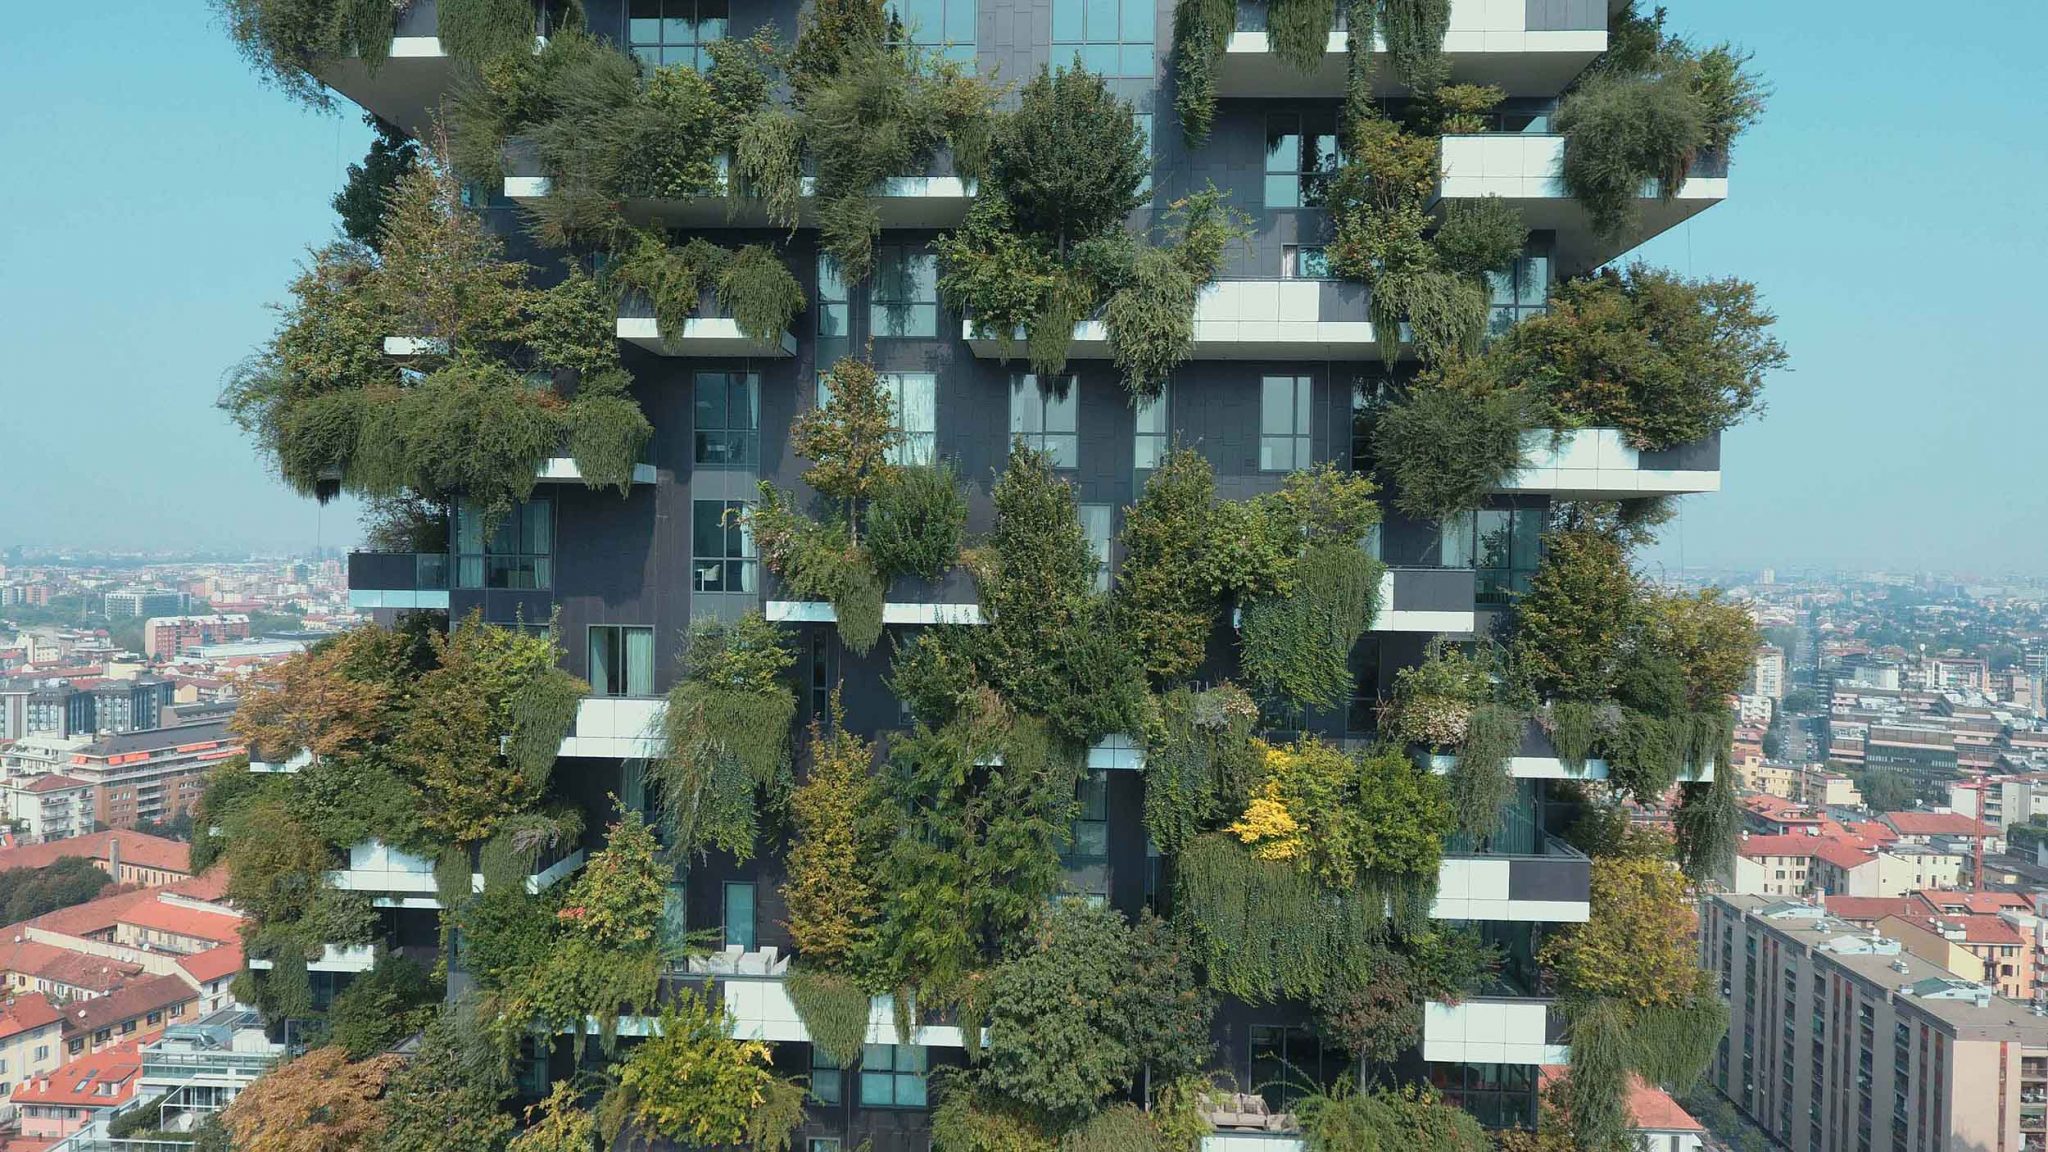 Bosco Verticale: Mailands grünste Hochhäuser